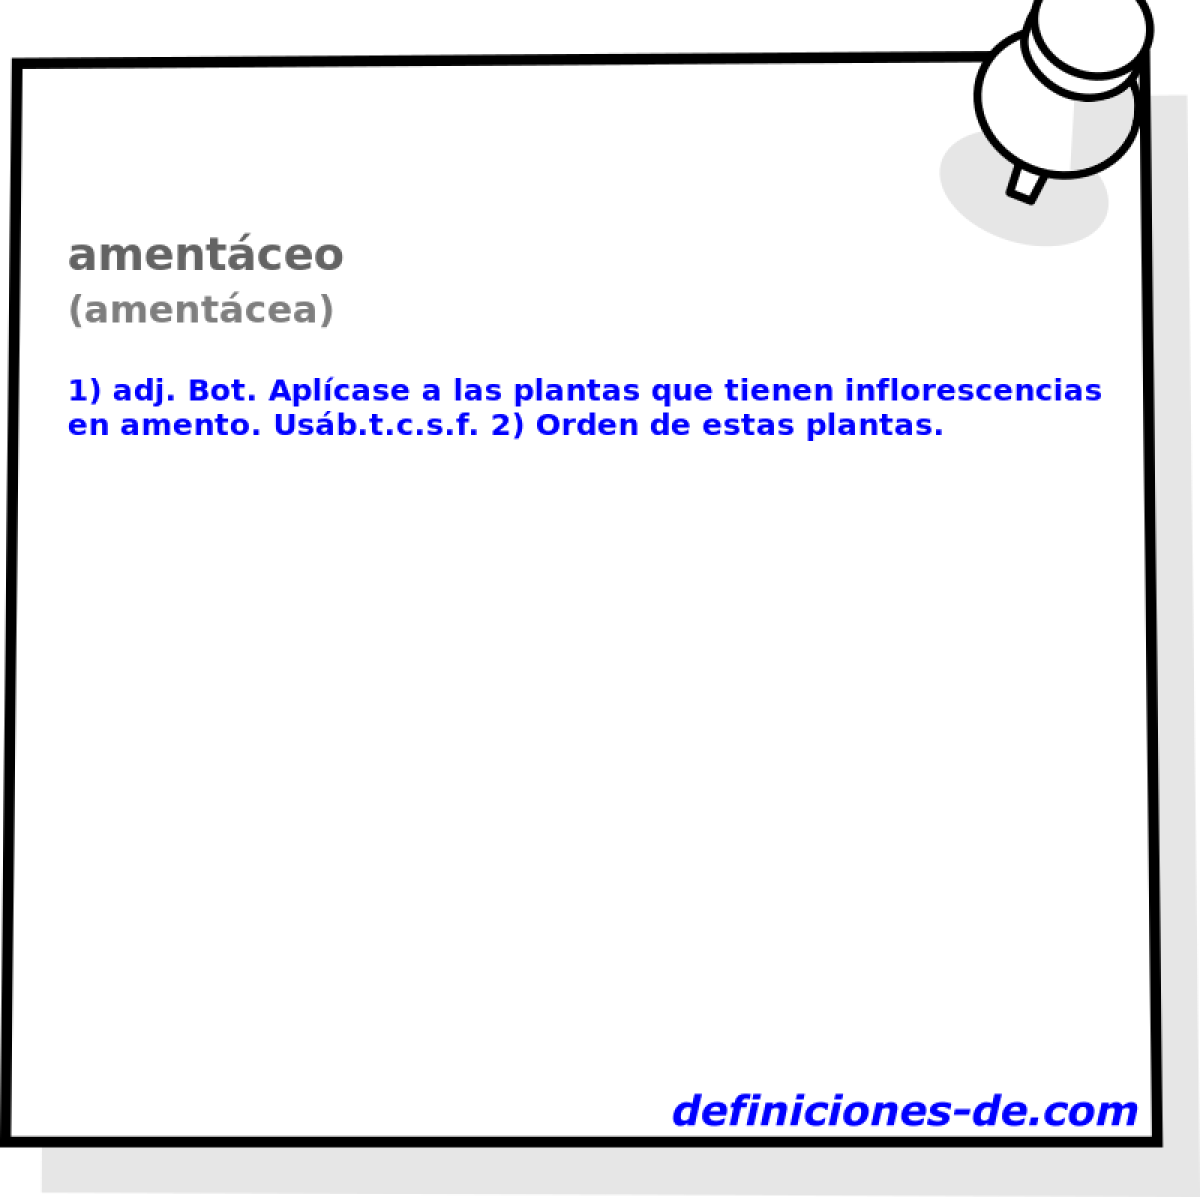 amentceo (amentcea)